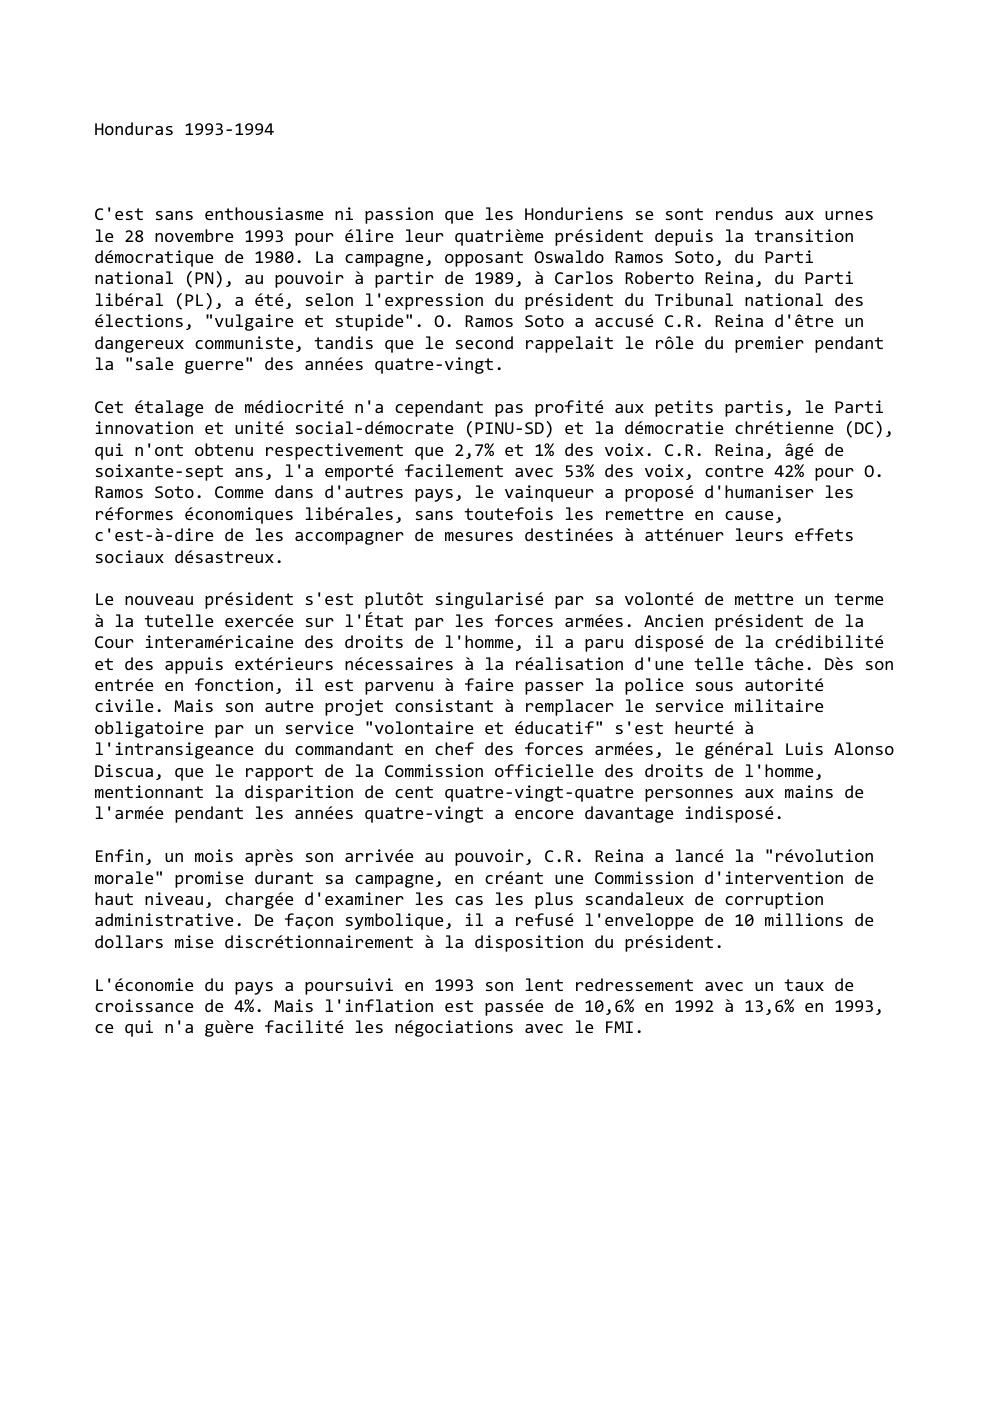 Prévisualisation du document Honduras 1993-1994

C'est sans enthousiasme ni passion que les Honduriens se sont rendus aux urnes
le 28 novembre 1993 pour...